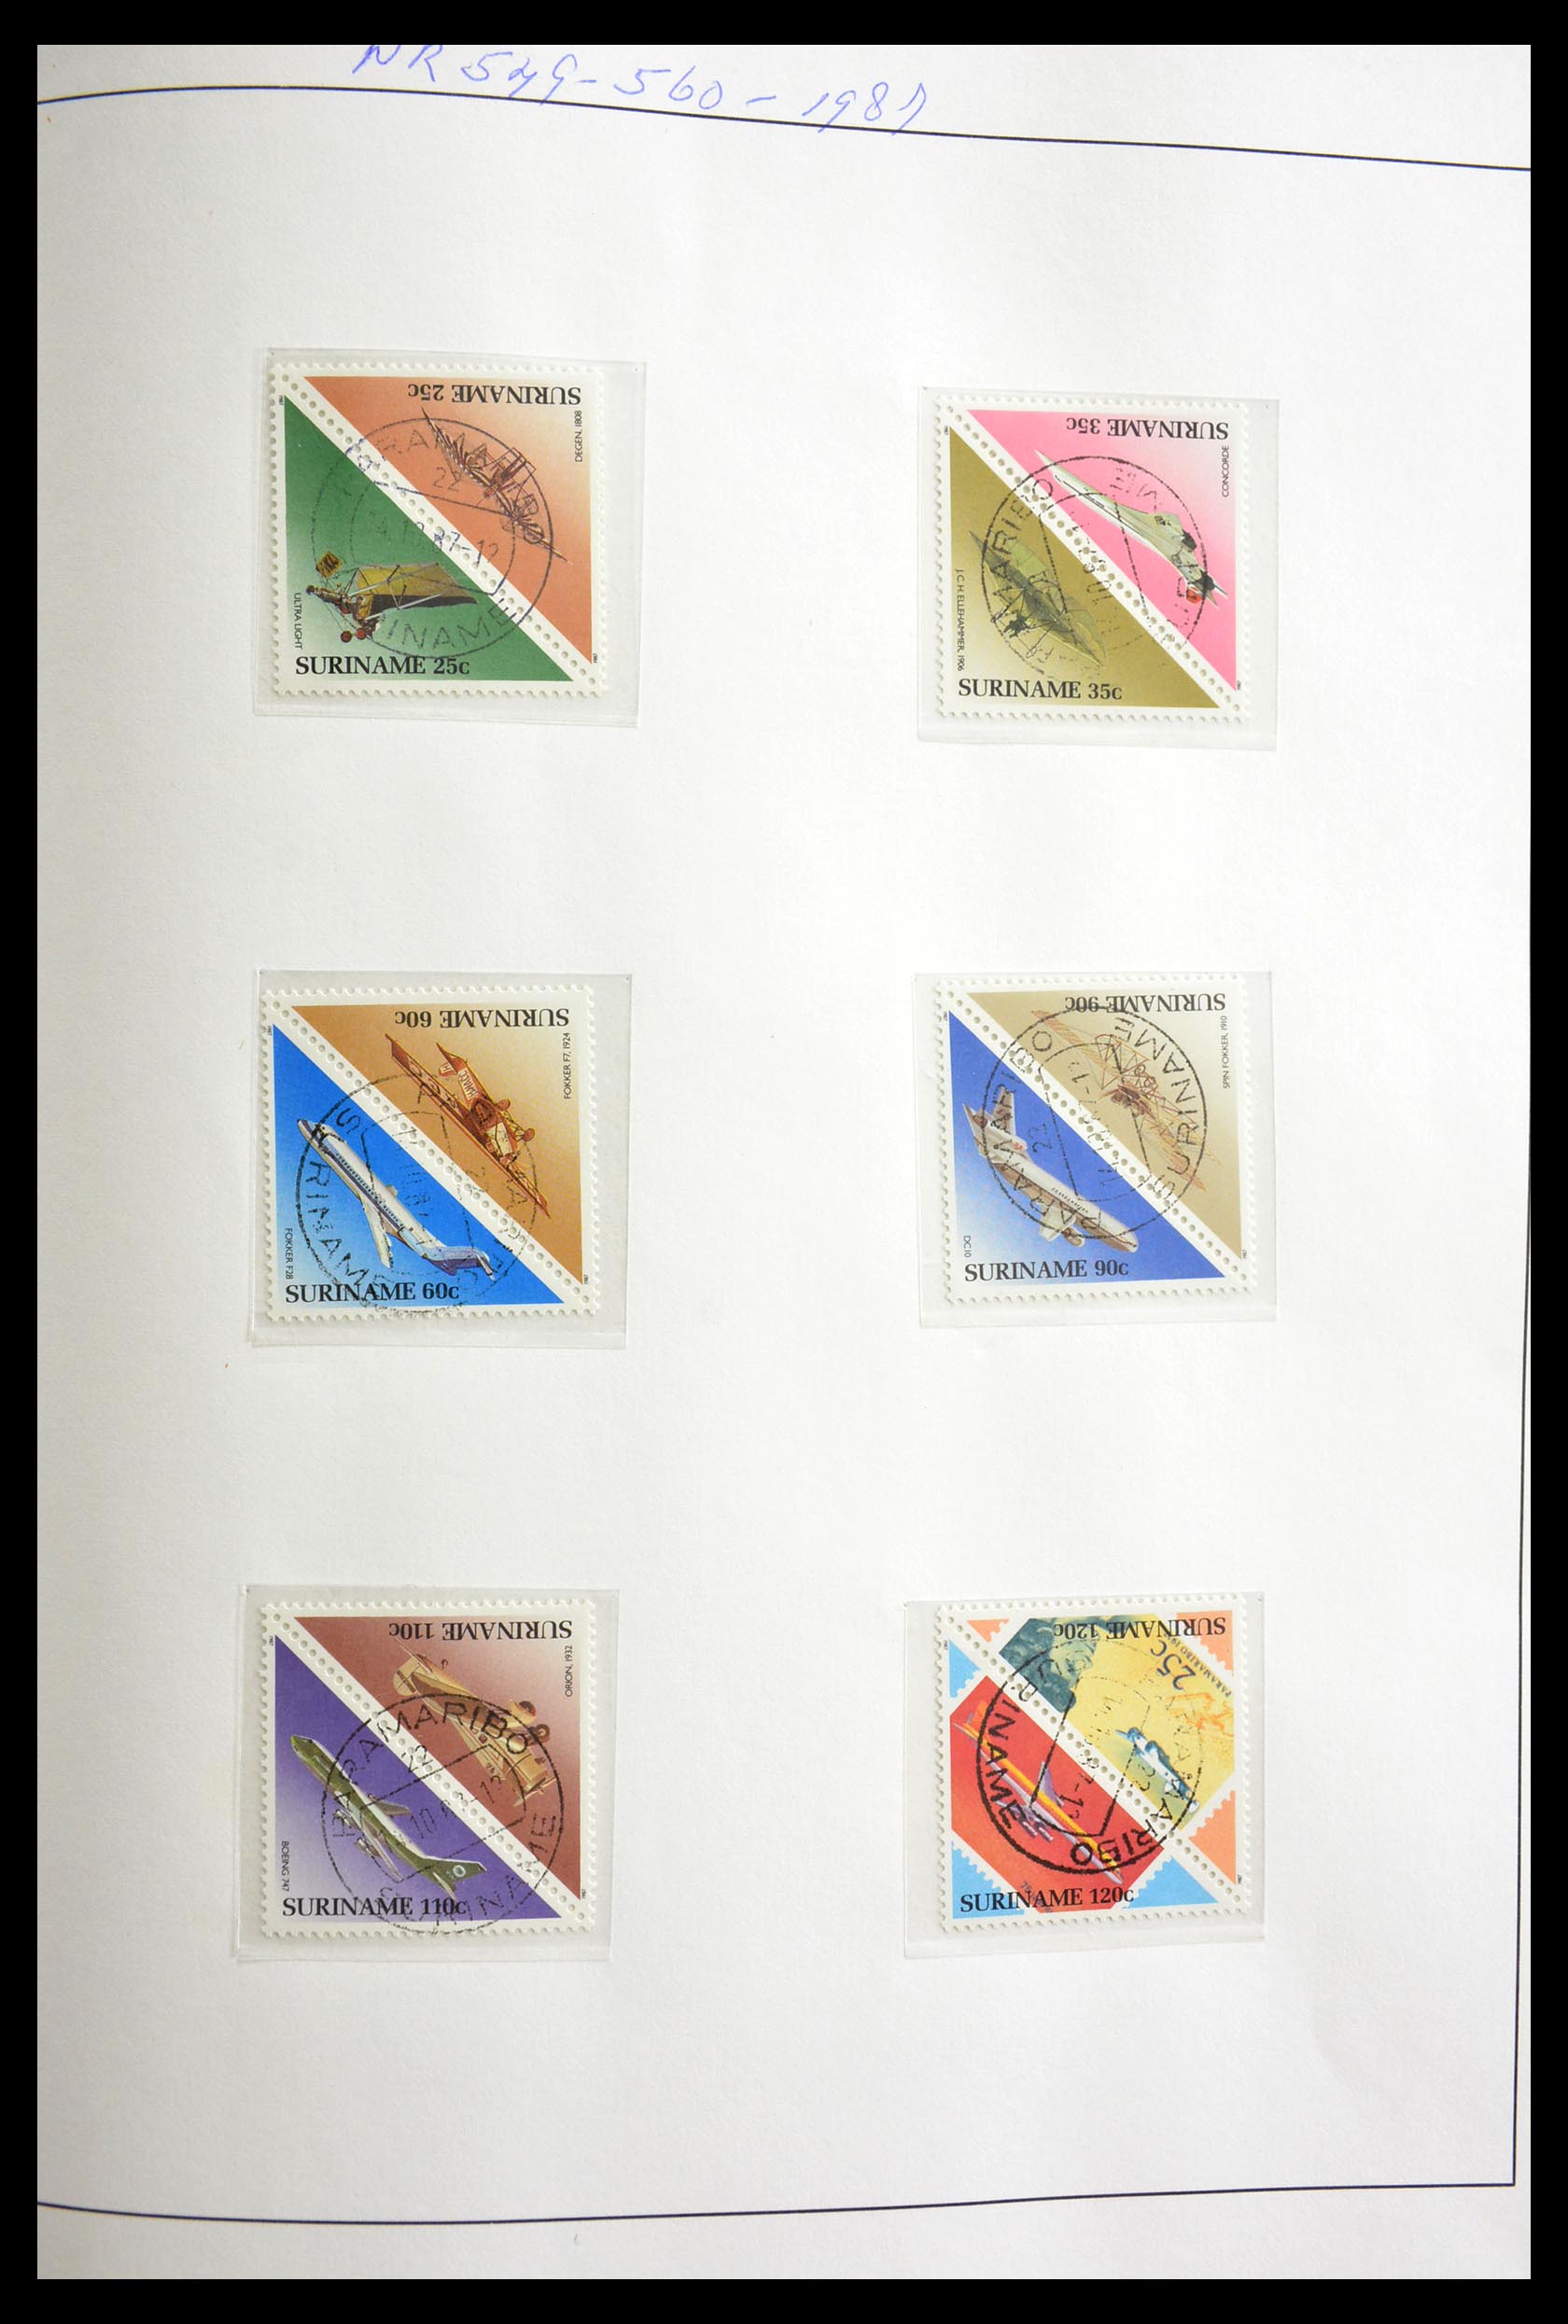 29154 061 - 29154 Surinam gutterpairs 1977-2003.